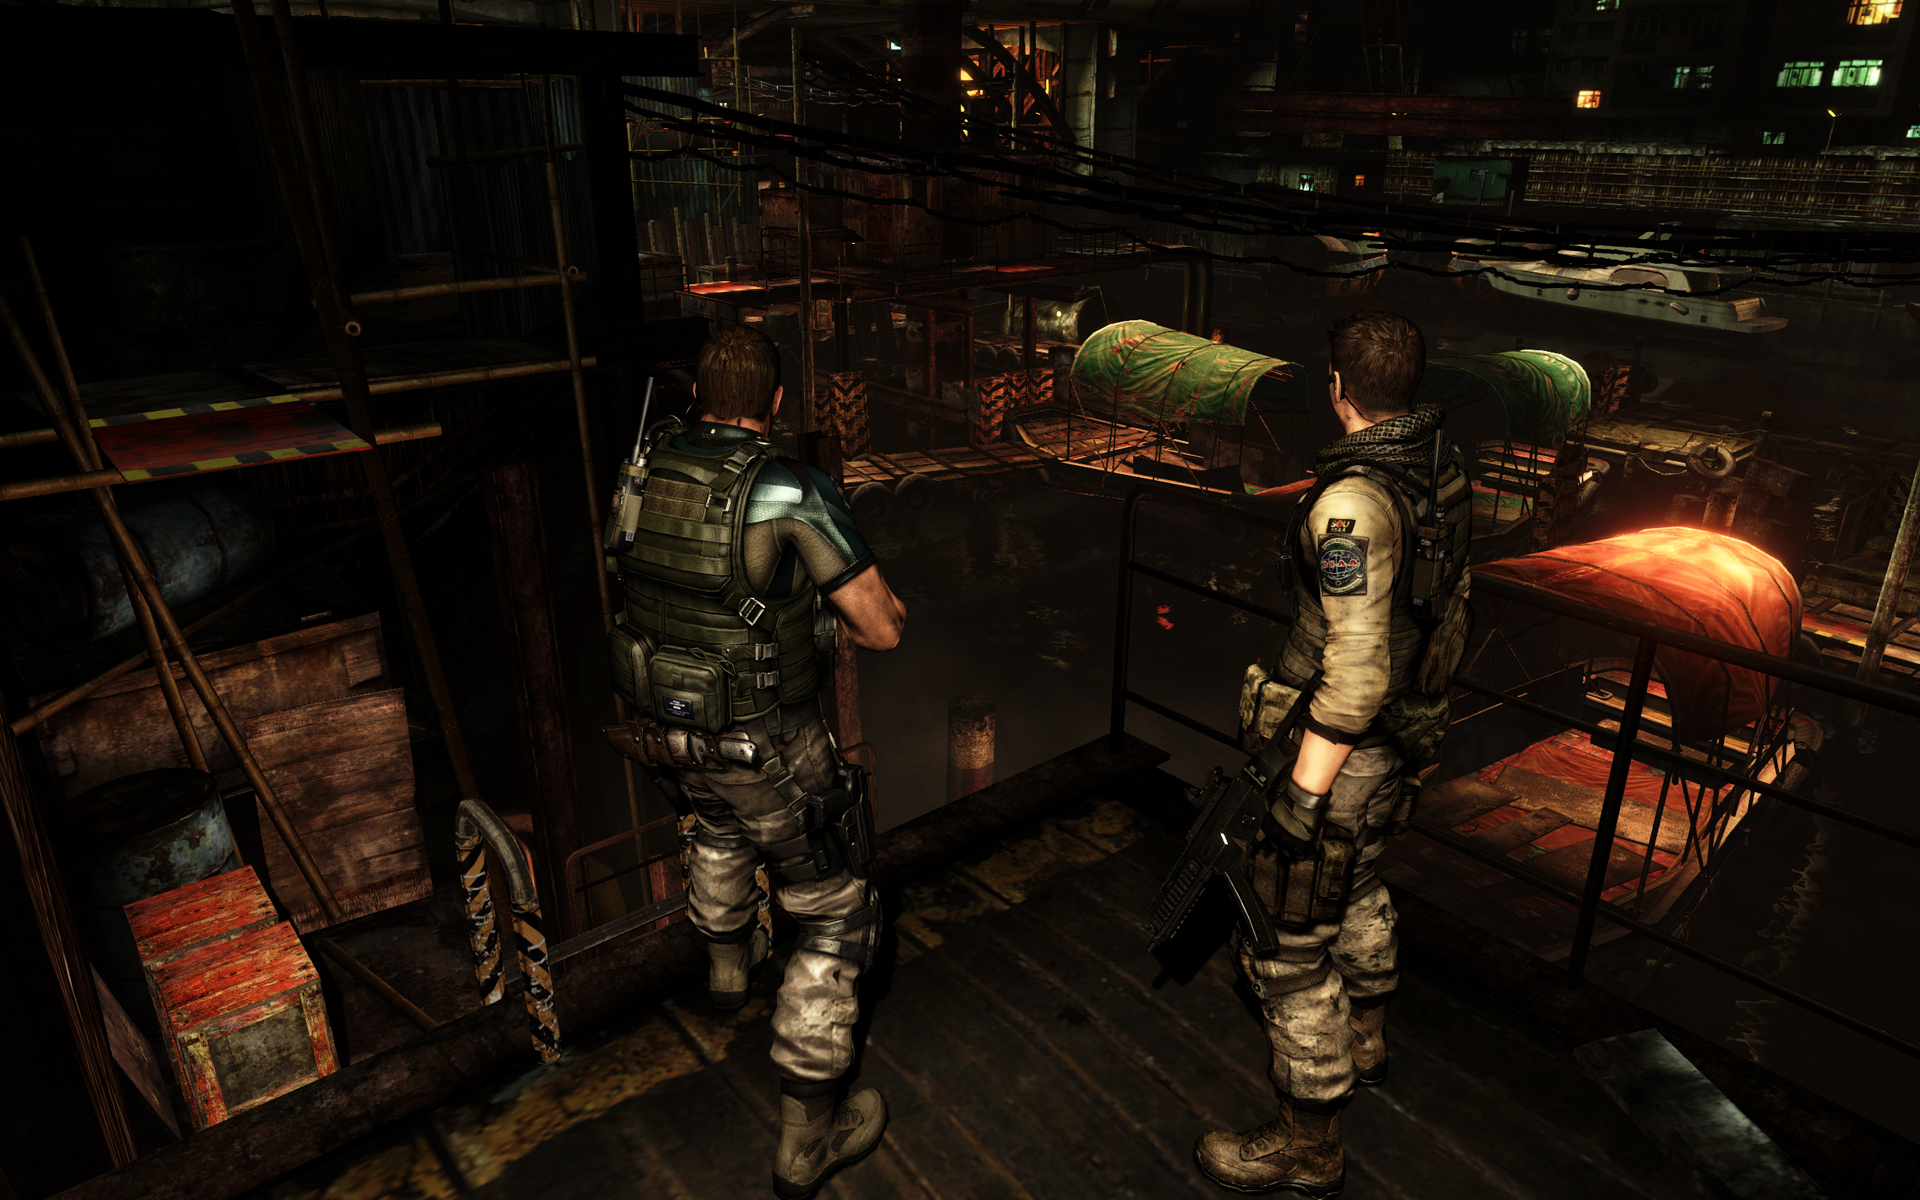 Immagine pubblicata in relazione al seguente contenuto: Capcom rilascia il software di testing Resident Evil 6 Benchmark | Nome immagine: news19010_Resident-Evil-6-Benchmark-screenshot_1.jpg